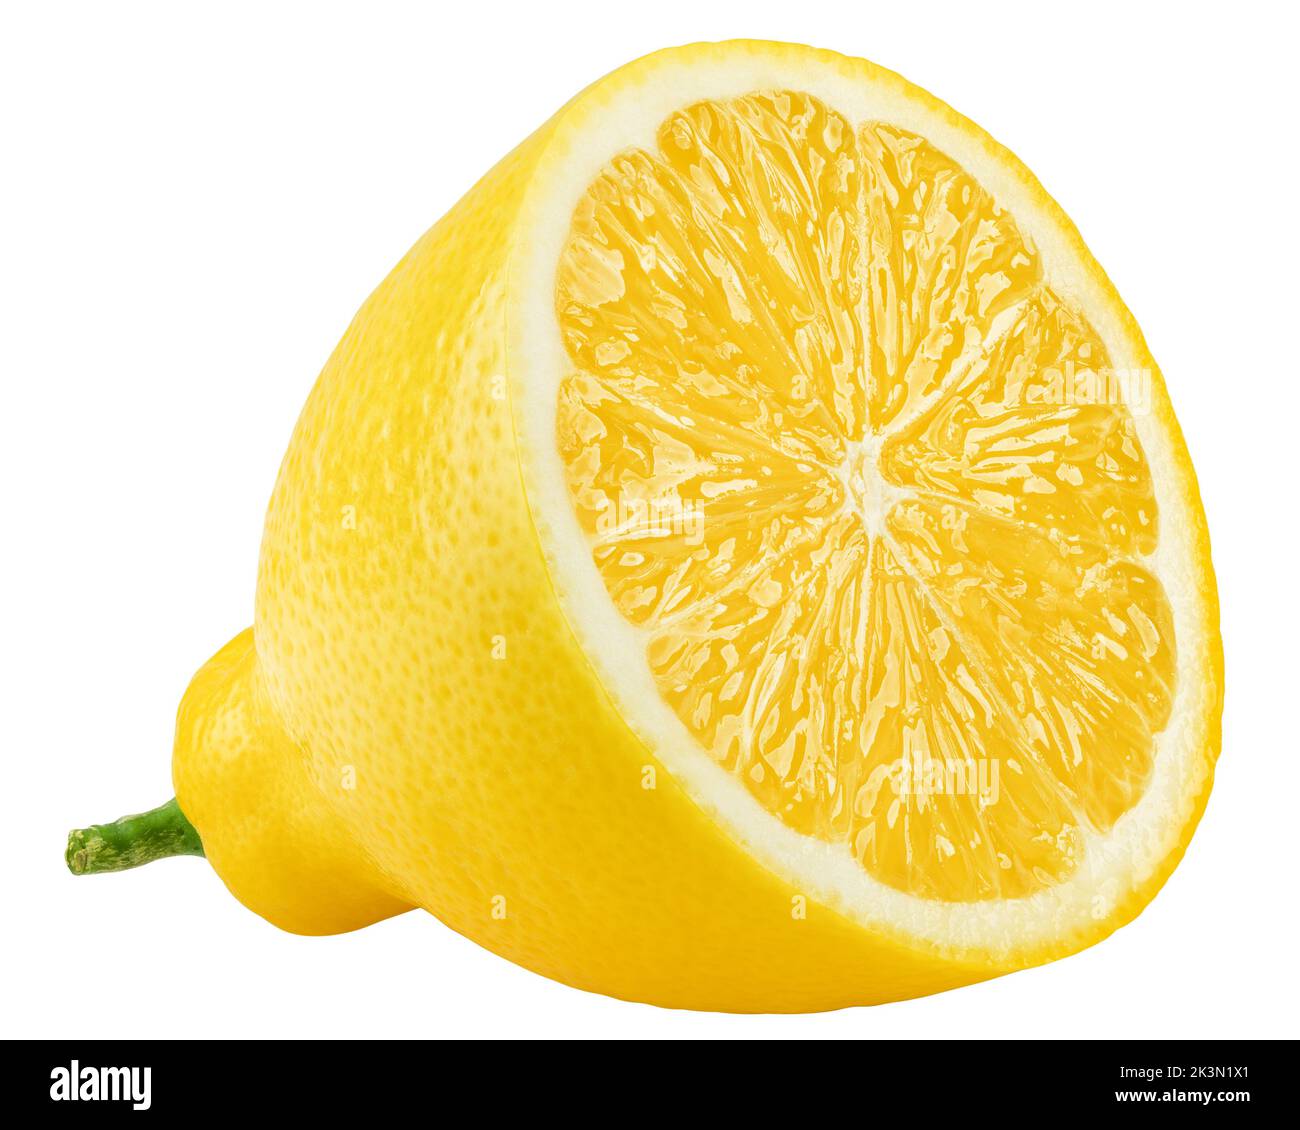 Zitrone, auf weißem Hintergrund, Beschneidungspfade, volle Tiefenschärfe Stockfoto